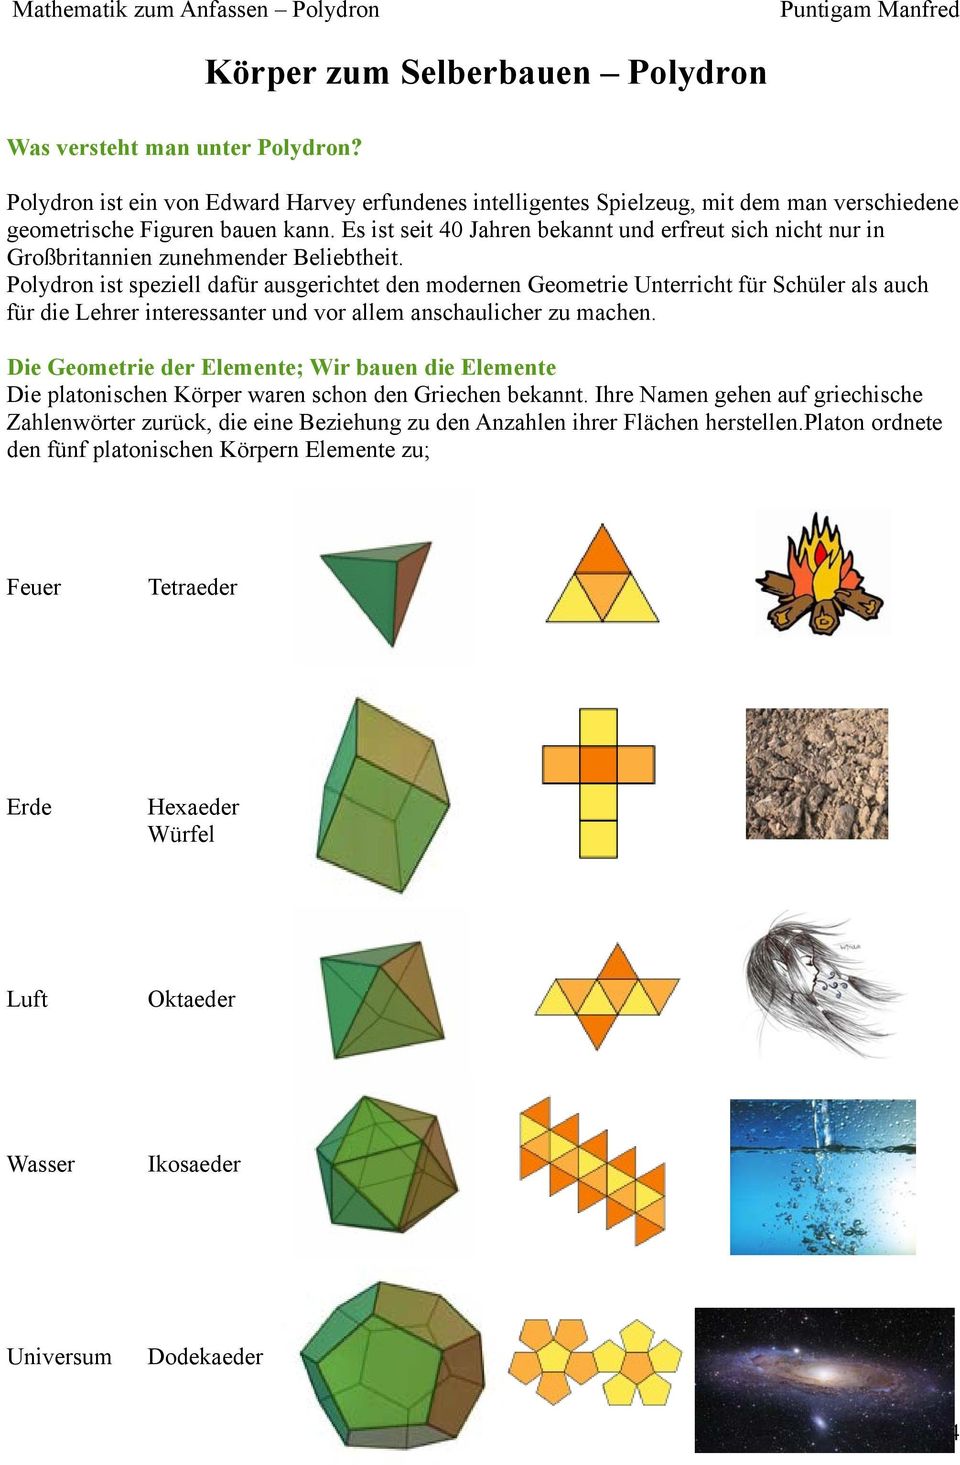 Polydron ist speziell dafür ausgerichtet den modernen Geometrie Unterricht für Schüler als auch für die Lehrer interessanter und vor allem anschaulicher zu machen.